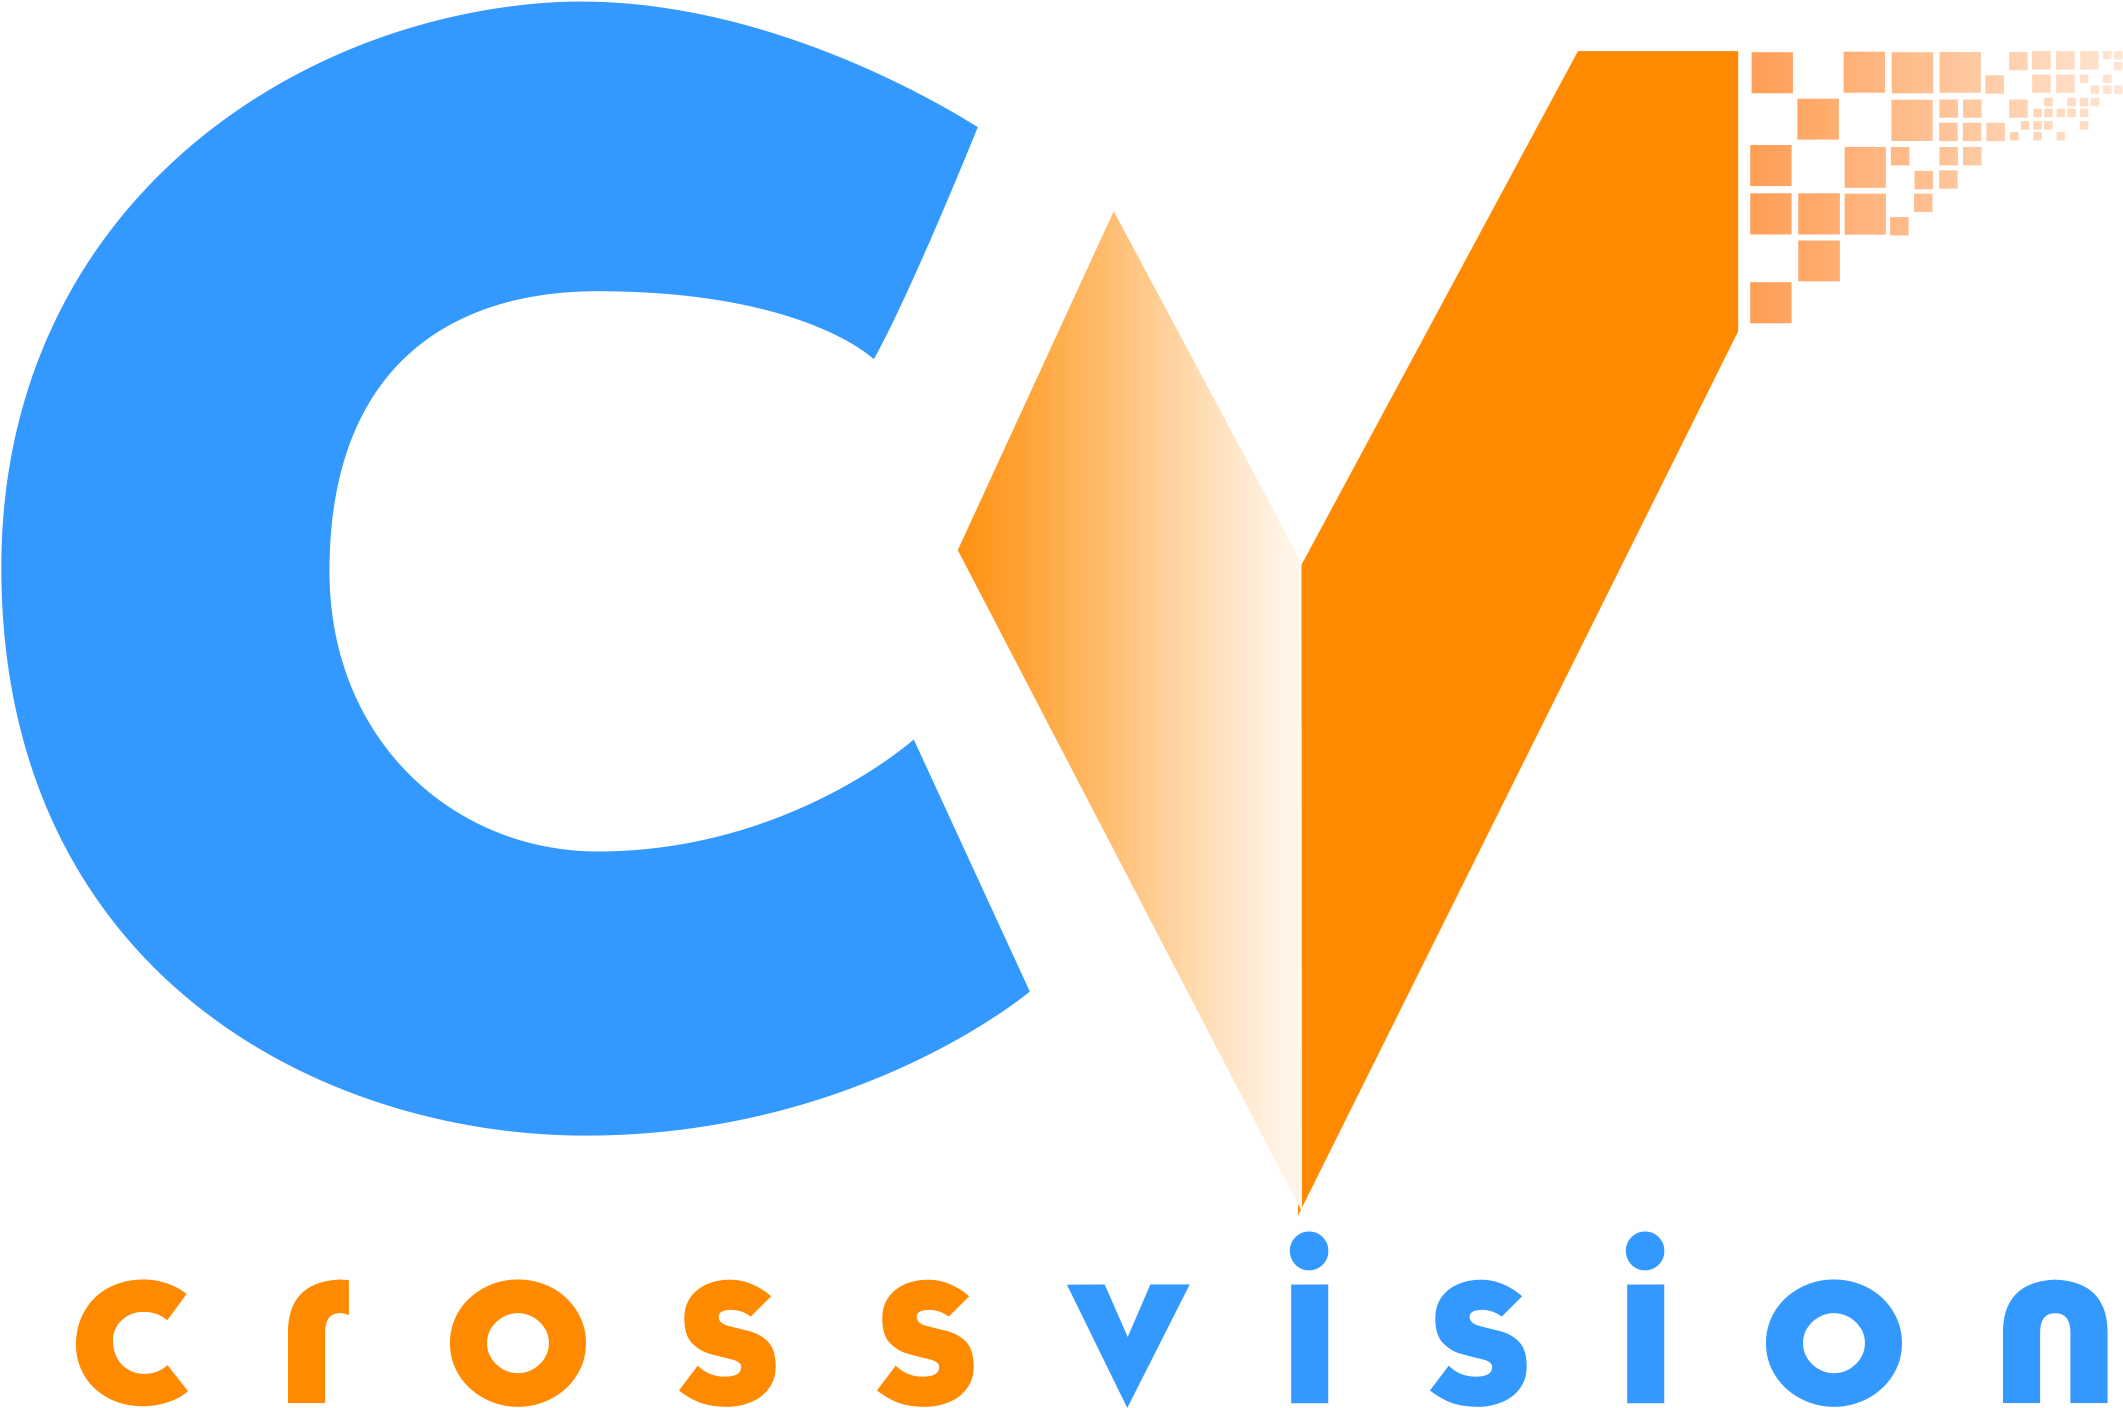 Crossvision Privacy Policy - Crossvision (2259x1527)